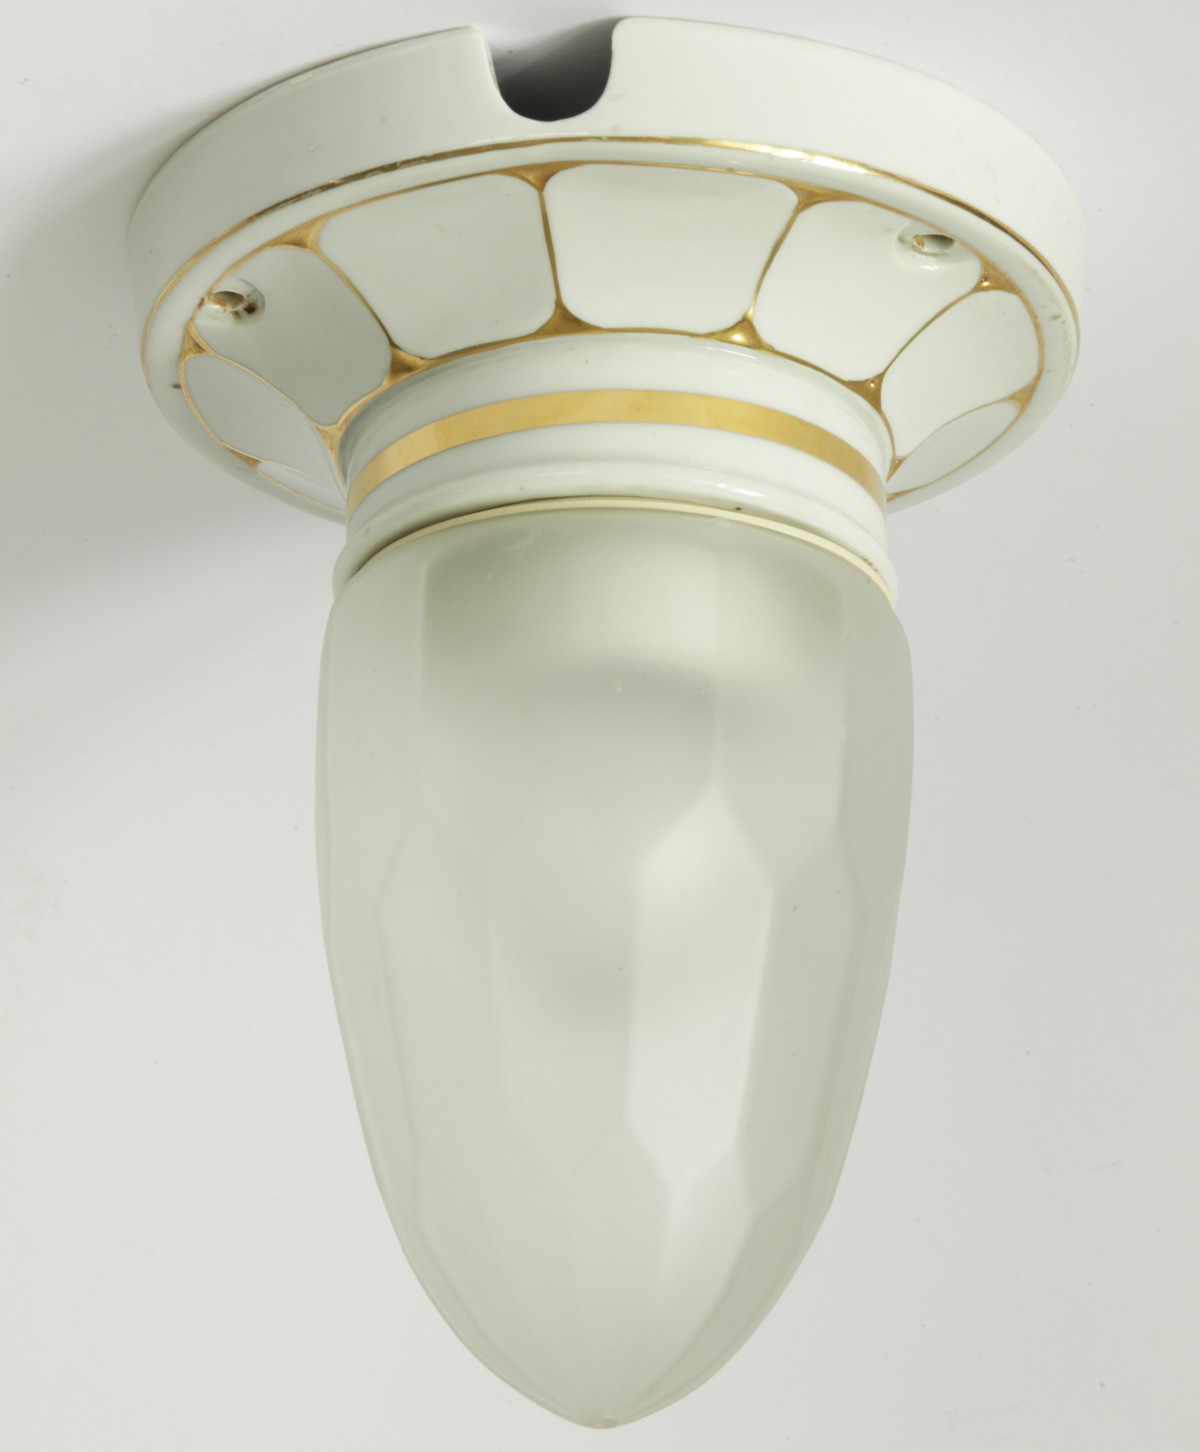 Wiener Badleuchte aus weiß-goldenem Porzellan, um 1900 – VERKAUFT, Bild 2